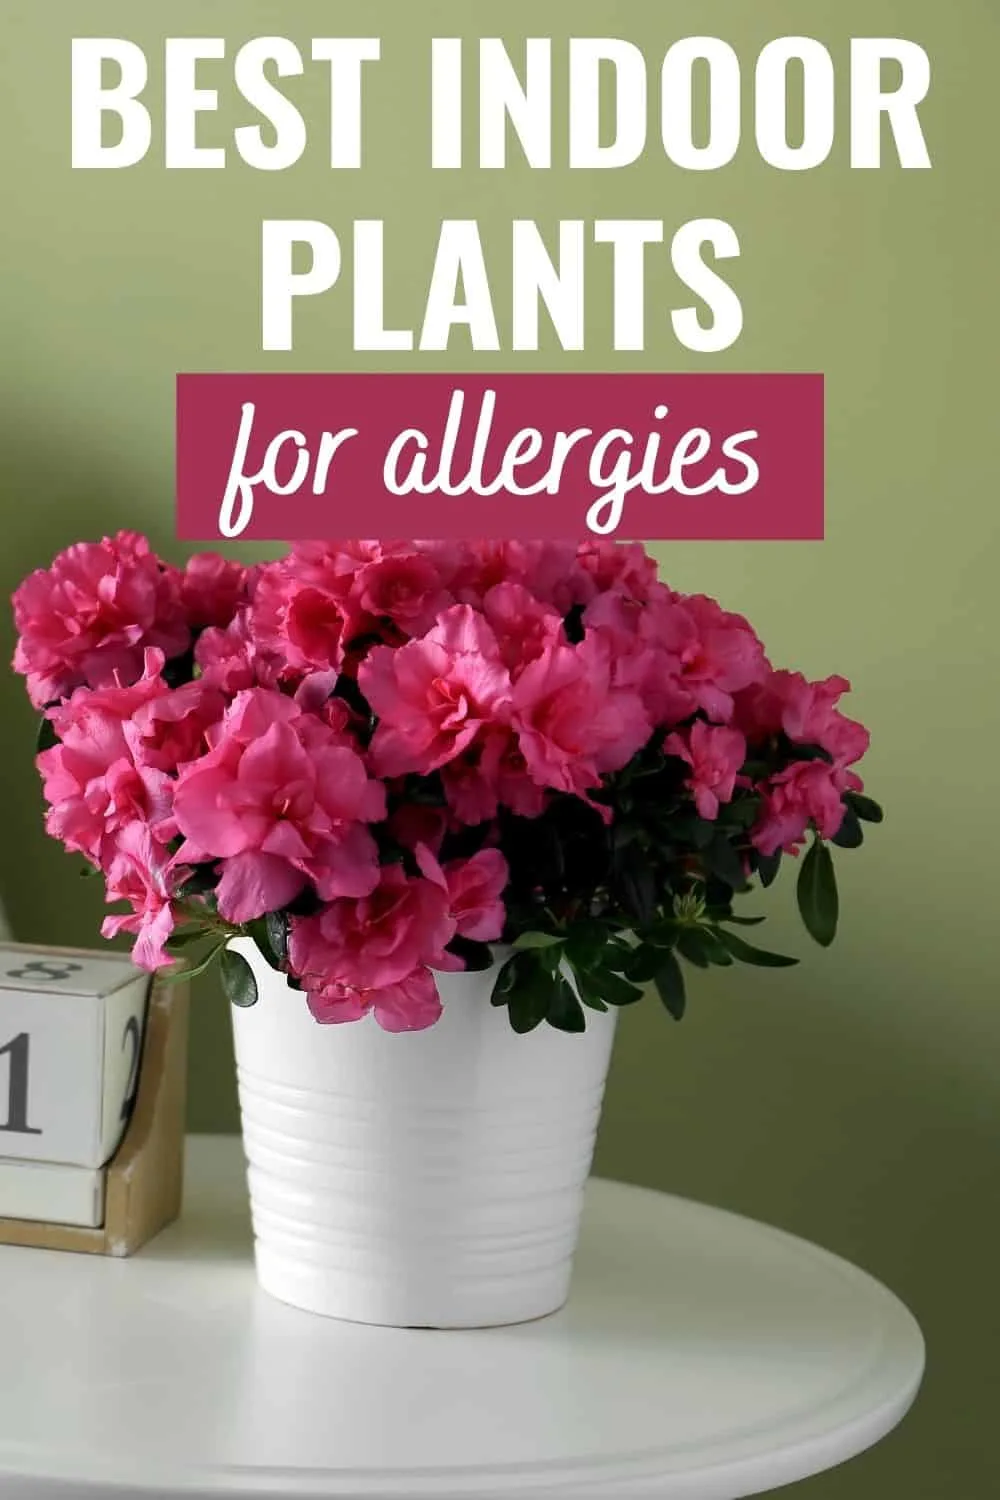 Best indoor plants for allergies